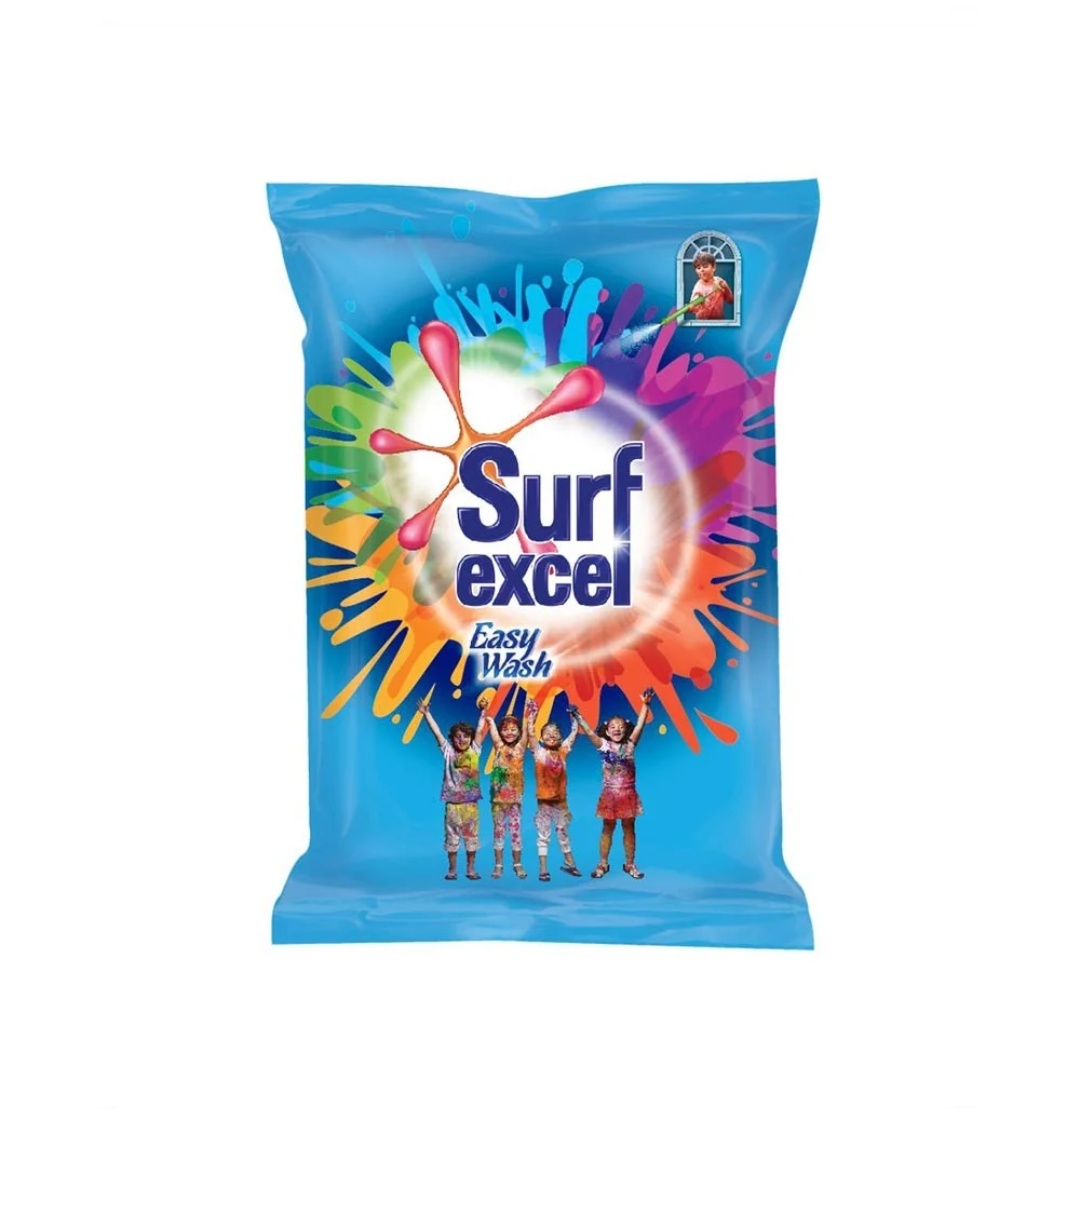 Surf Excel Easy Wash Detergent Powder, 1.5 kg